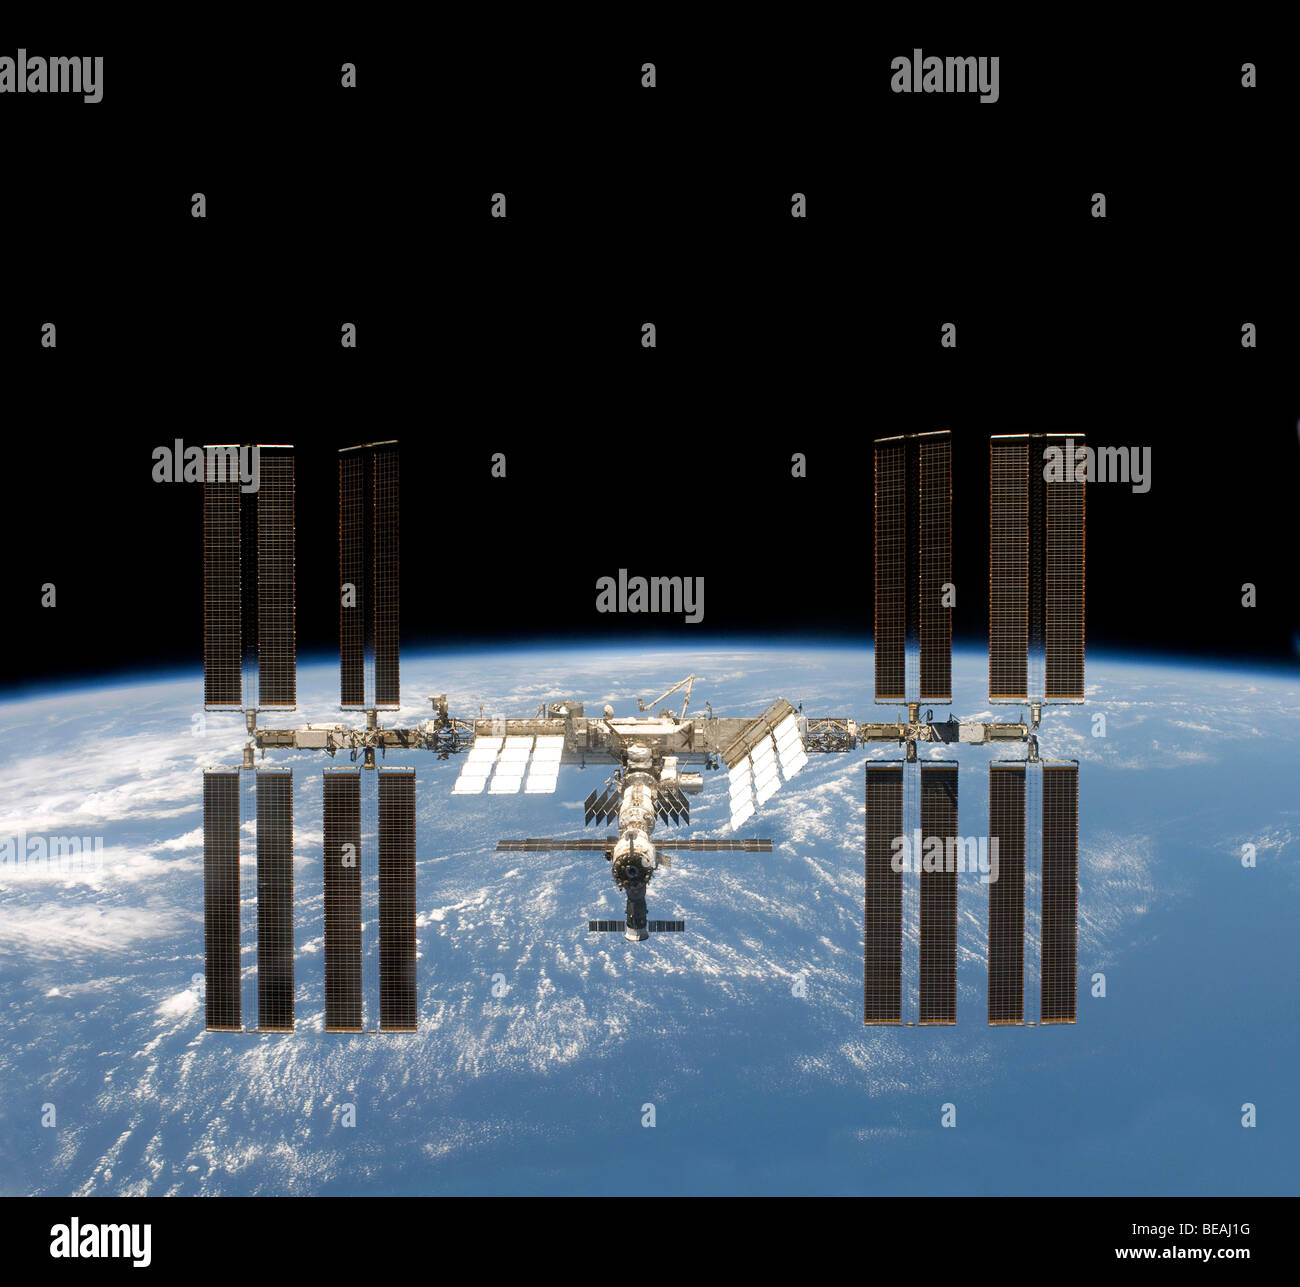 Stazione spaziale internazionale. Ottimizzato e la versione avanzata di un originale immagine della NASA. Marzo 2009 Foto Stock